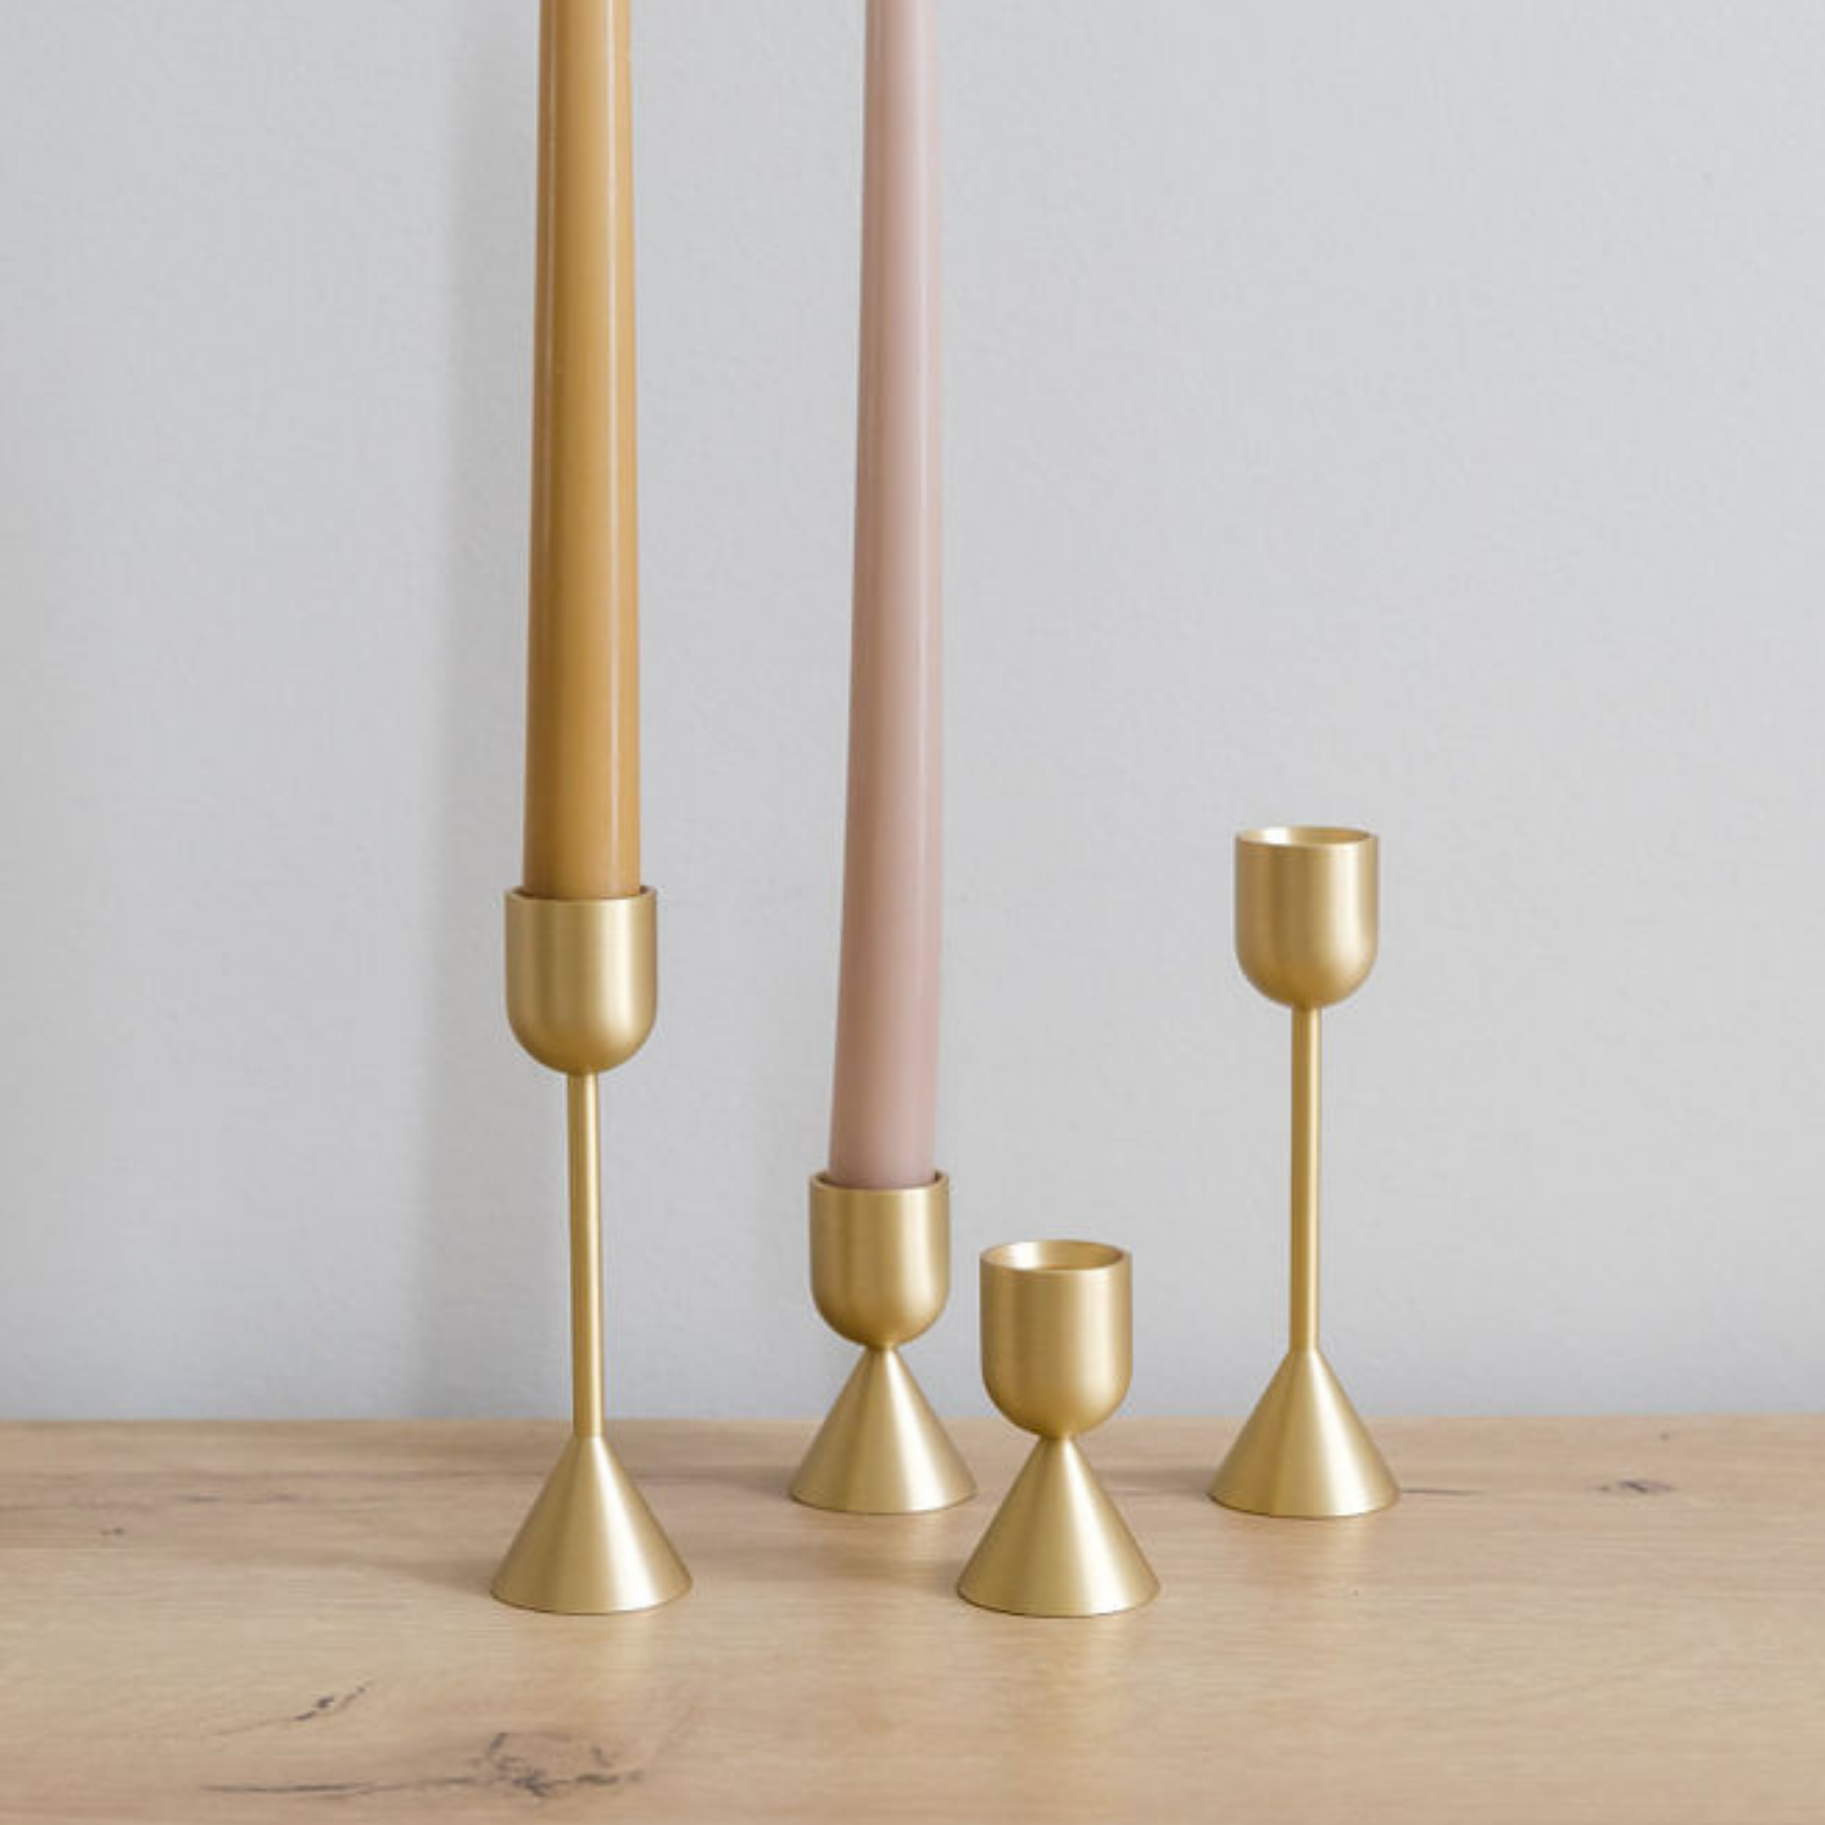 Golden Light Brass Candlestick Holder